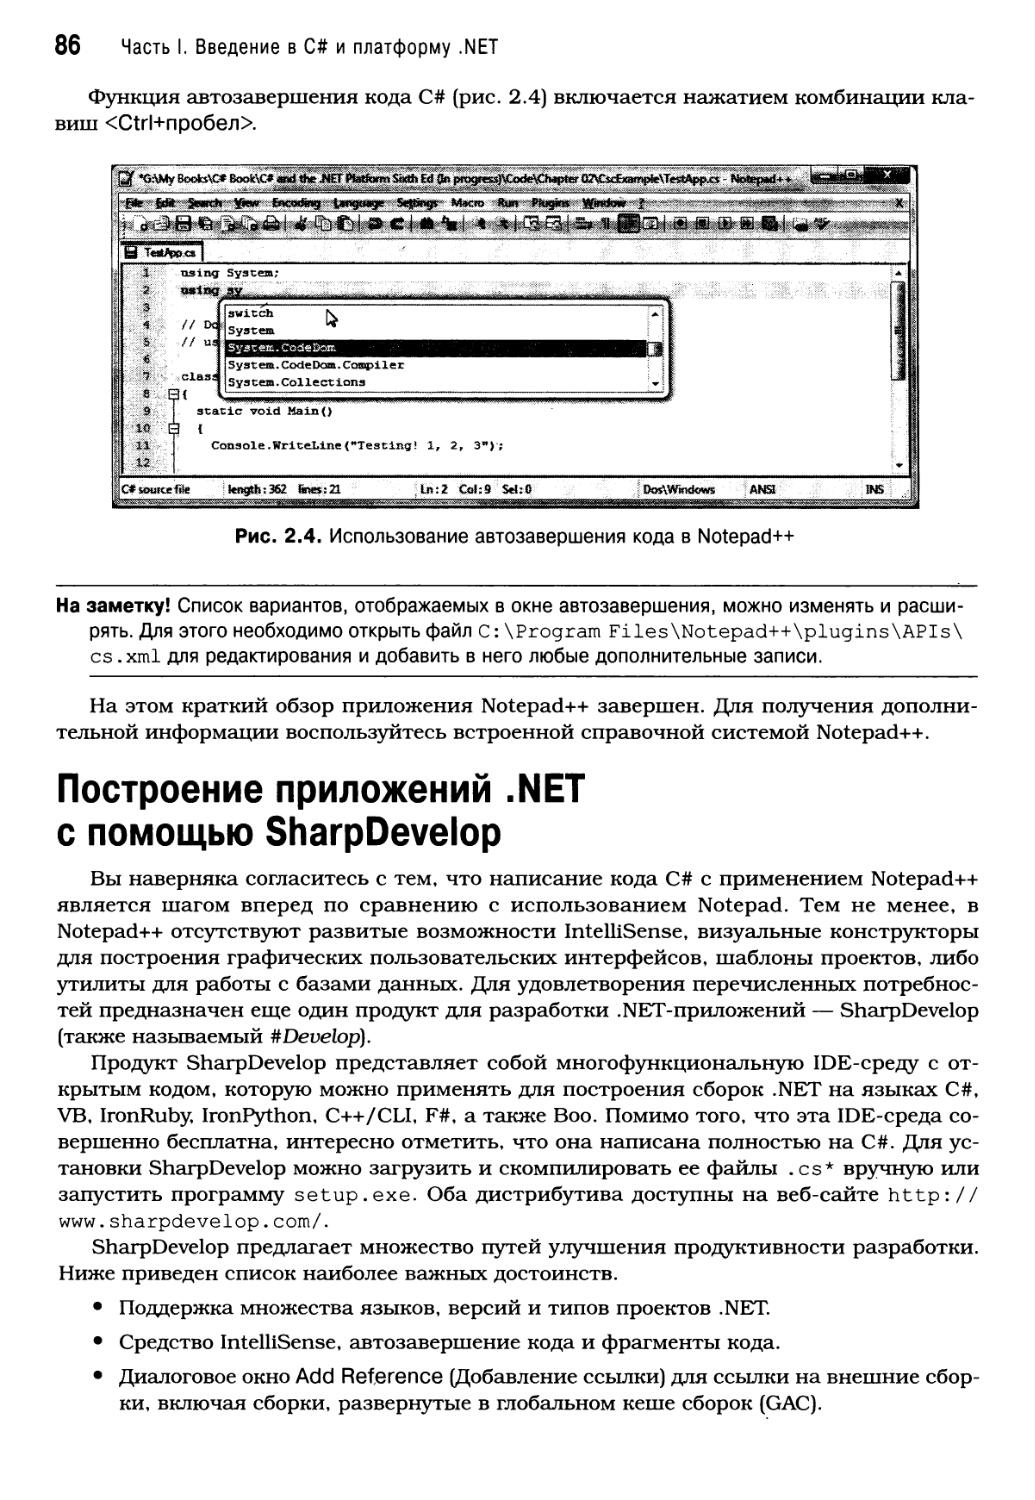 Построение приложений .NET с помощью SharpDevelop